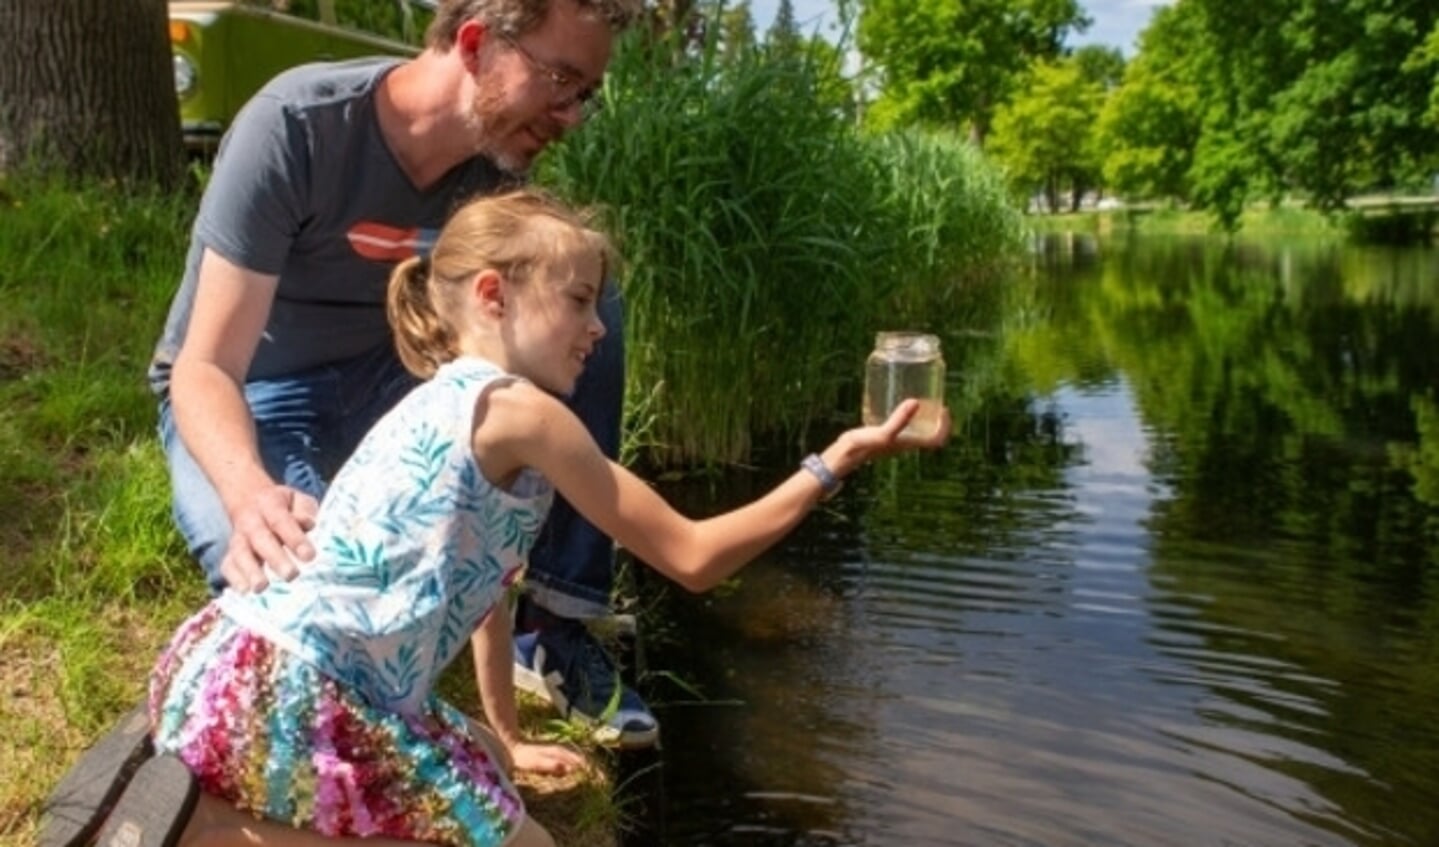 De hulp van veel inwoners door heel Nederland nodig, zodat ook de waterkwaliteit van de kleine wateren wordt gemeten.